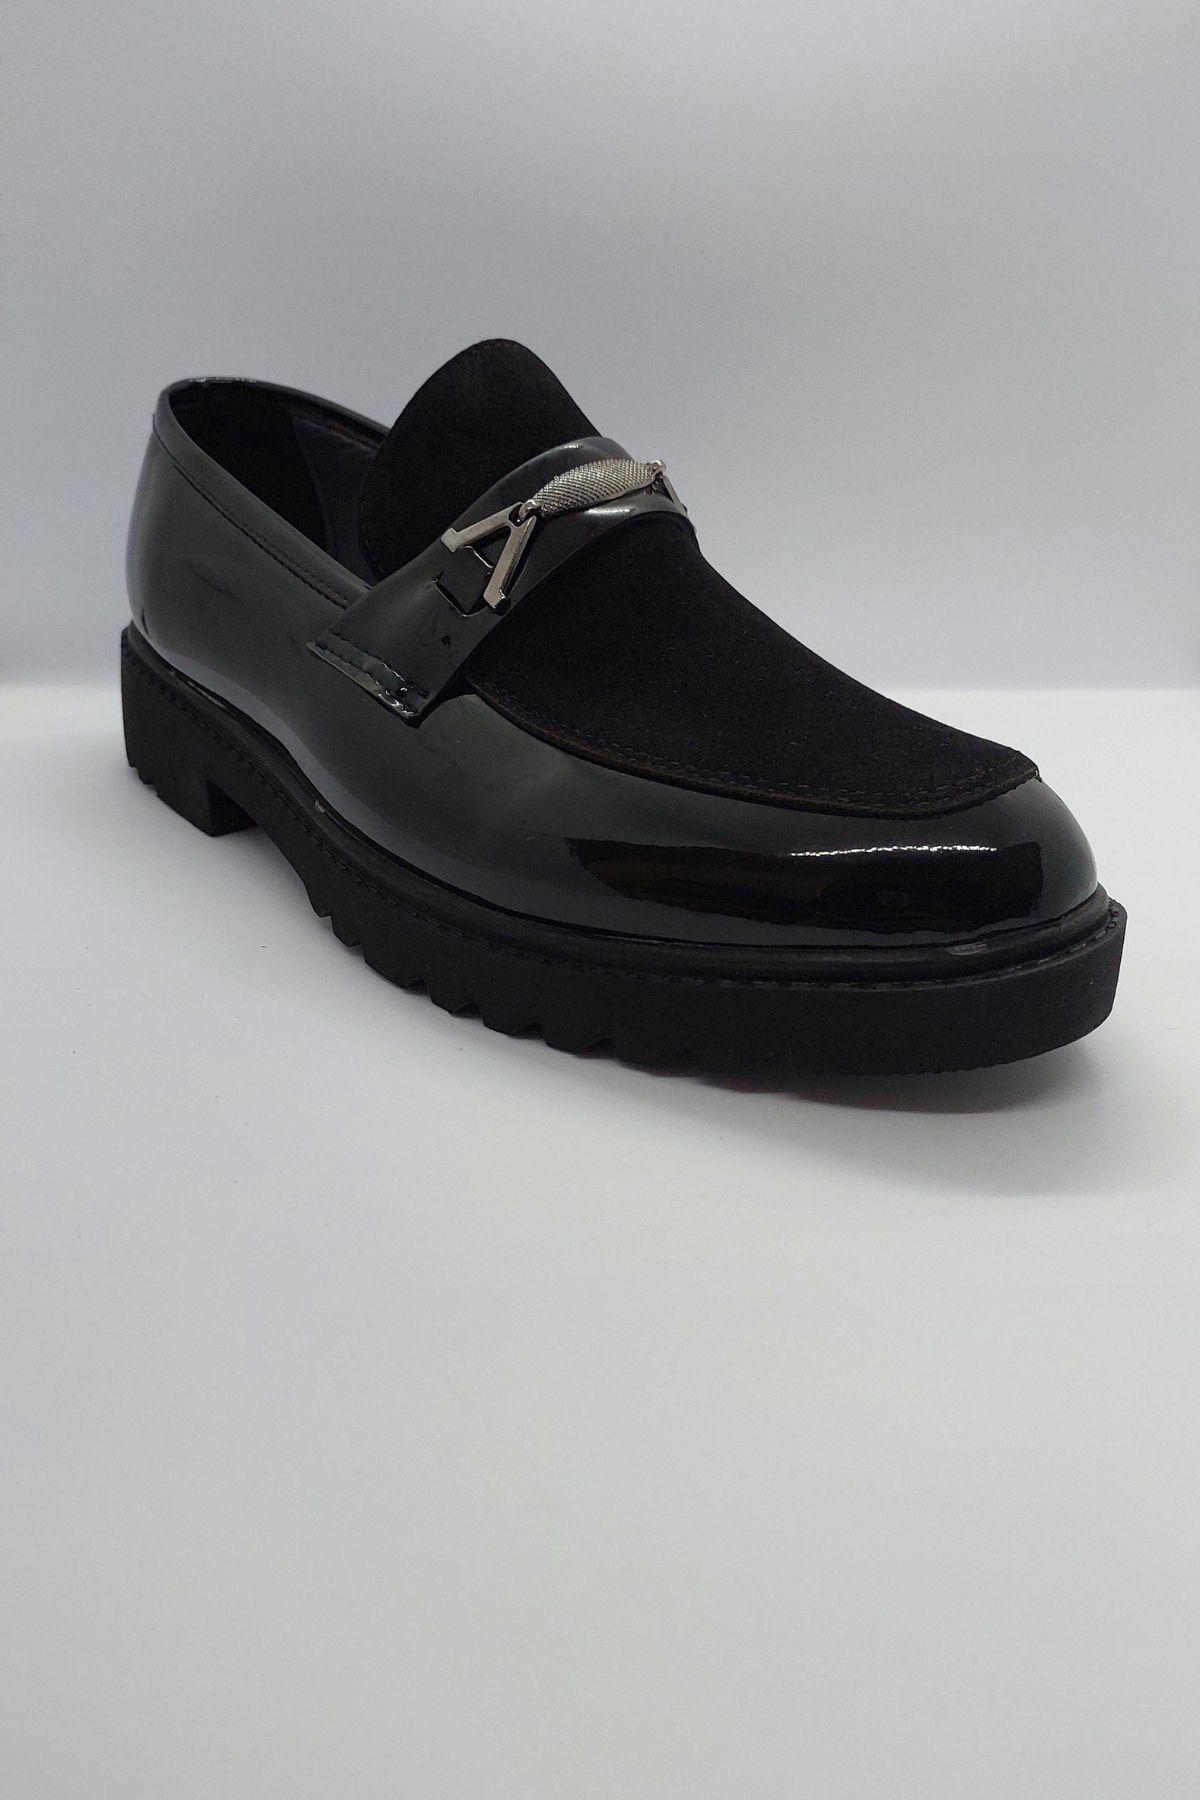 MrDemir %100 El İşçiliği Rugan Rahat Taban Bağcıksız Siyah Renk İmalat Deri Klasik Kundura Ayakkabı